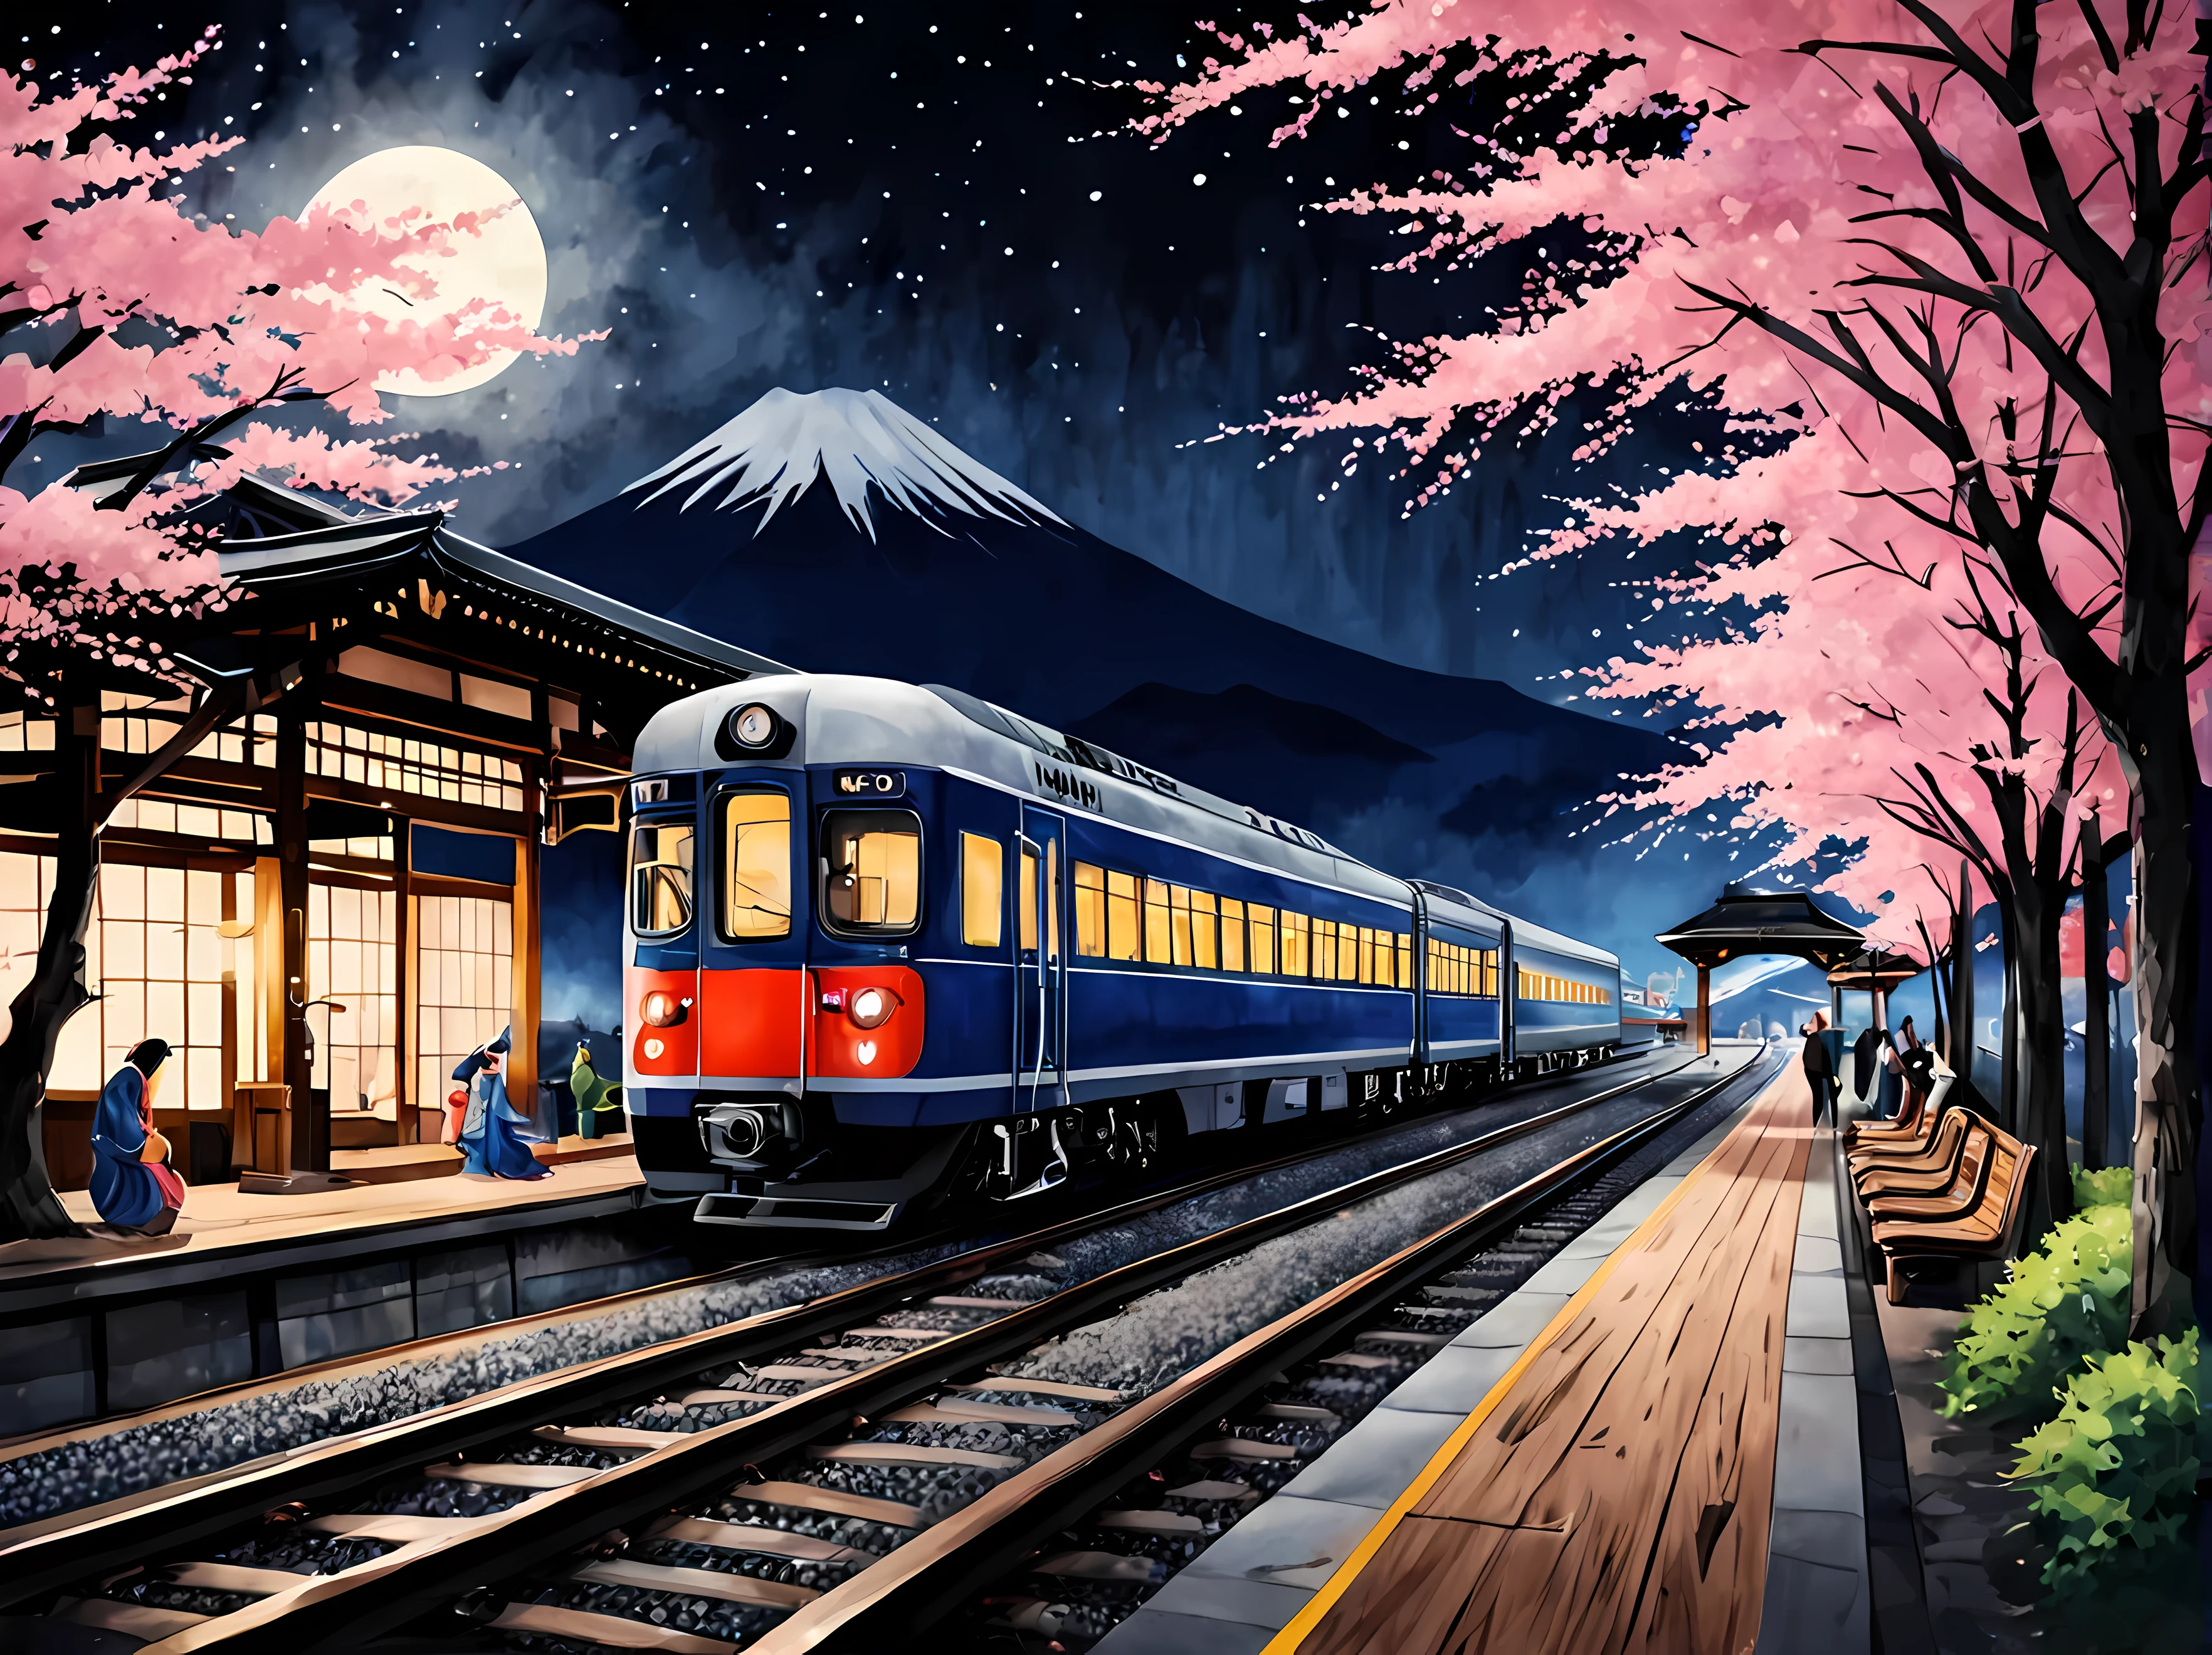 満月の夜、星が輝く春の日本の駅を描いた魅力的な水彩画, プラットフォームに停まっている洗練された未来的な電車, 桜の木に囲まれて, 提灯や木製のベンチなどの伝統的な要素, 背景には富士山, 伝統衣装を着た乗客, 最大16K解像度の傑作, 素晴らしい品質. | ((もっと_詳細))